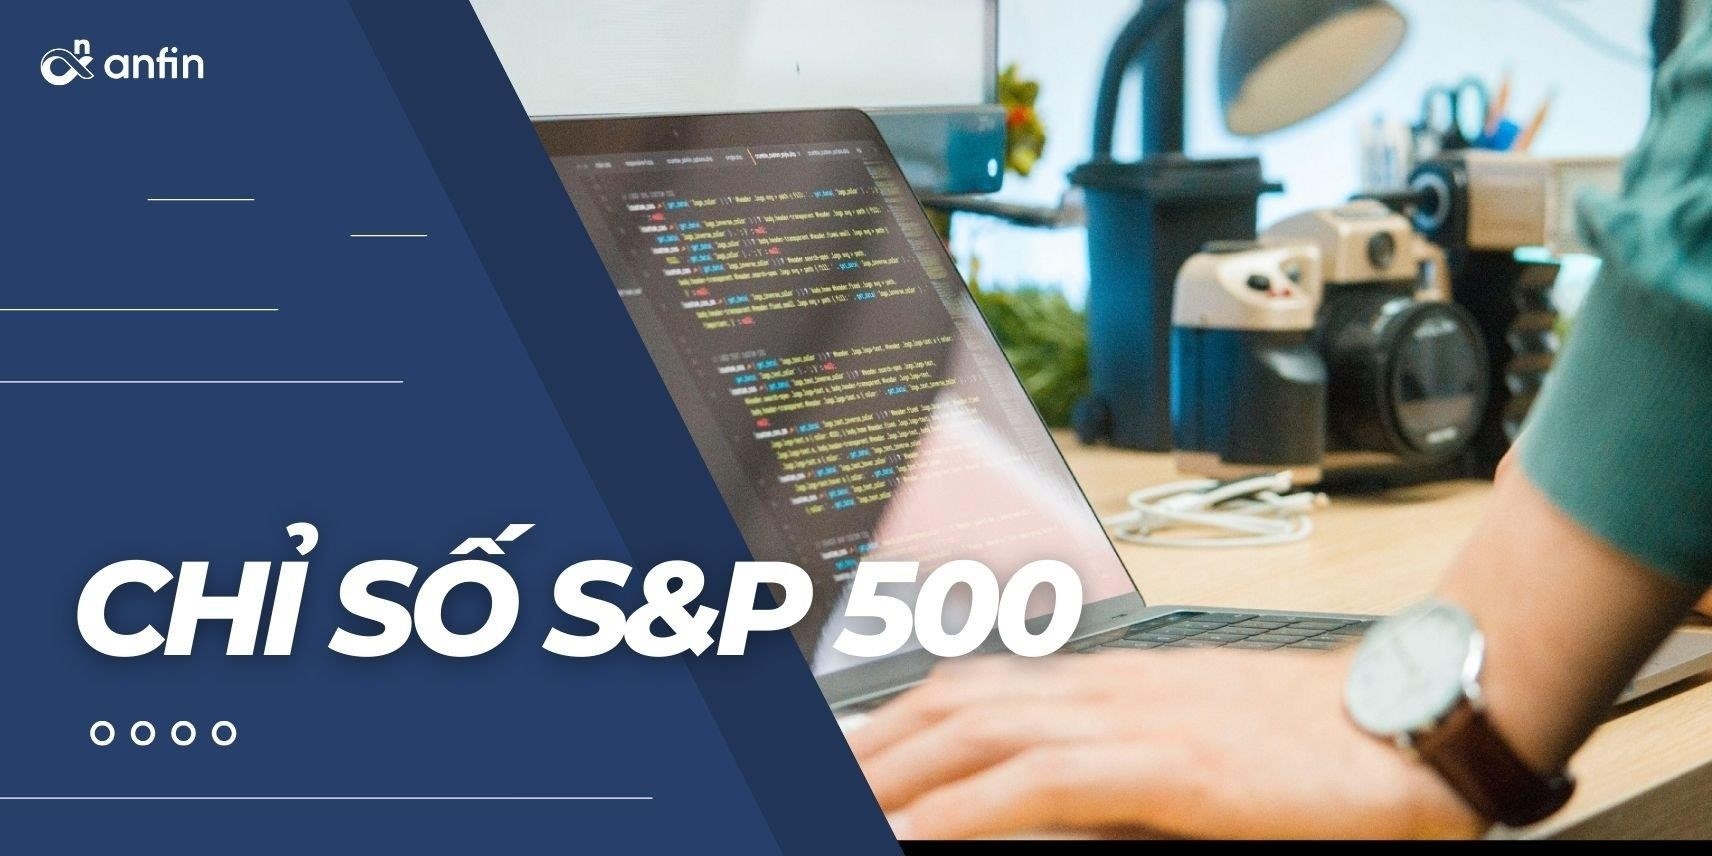 Chỉ số S&P500 là một chỉ số thị trường tài chính của Hoa Kỳ, đo lường hiệu suất của 500 công ty lớn và phổ biến nhất trên thị trường chứng khoán Mỹ.